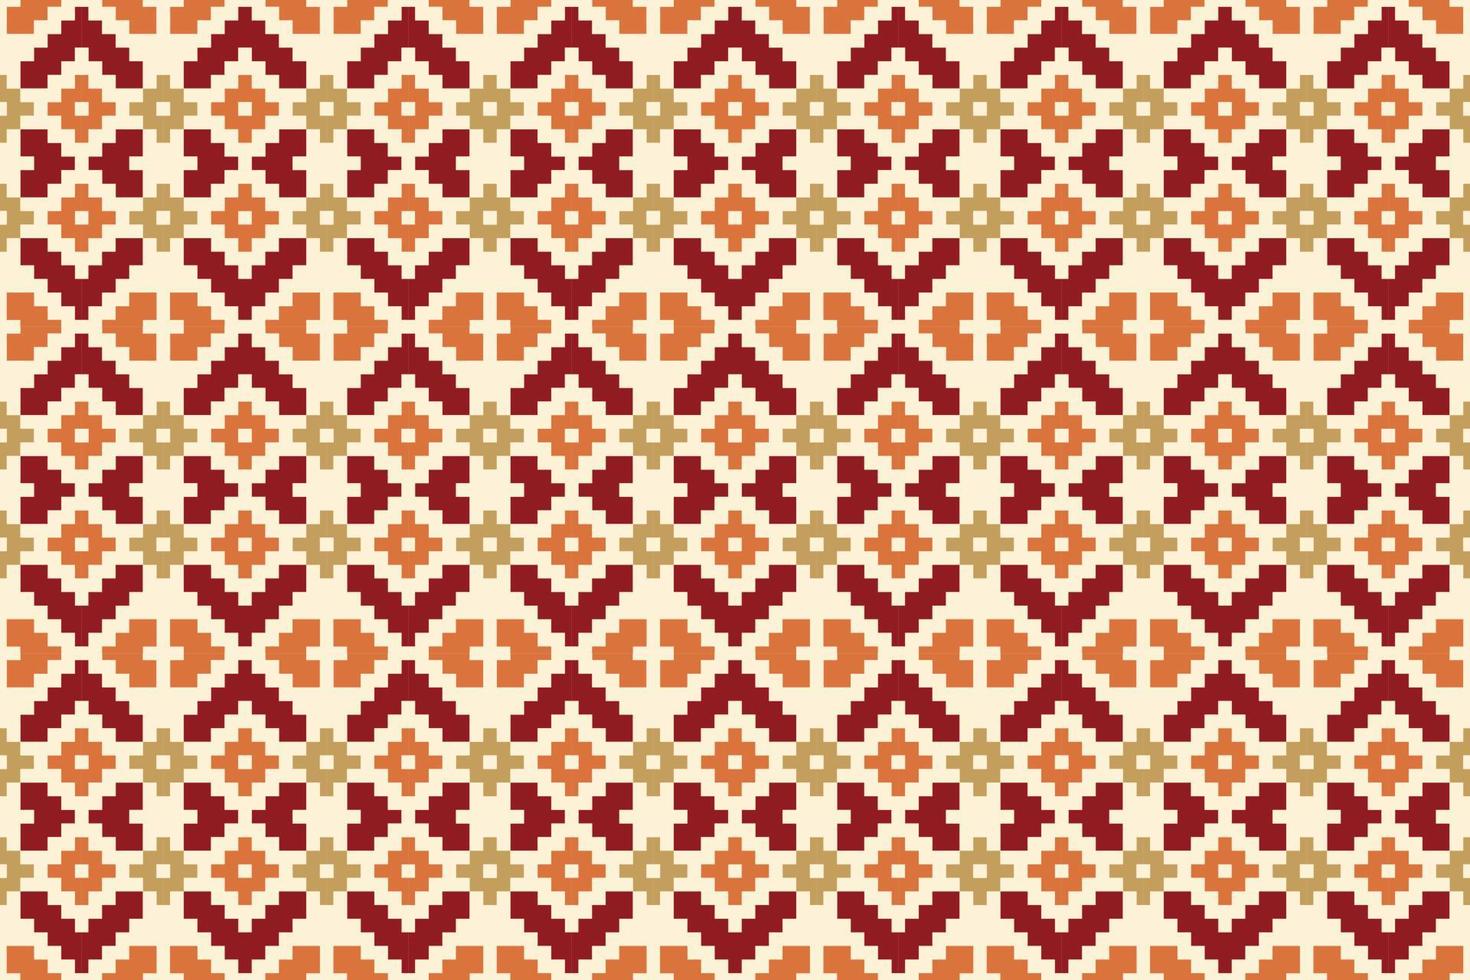 azteco etnico nazione navajo modelli africani design per stampe sfondo carta da parati trama vestito moda tessuto carta moquette industria tessile vettore